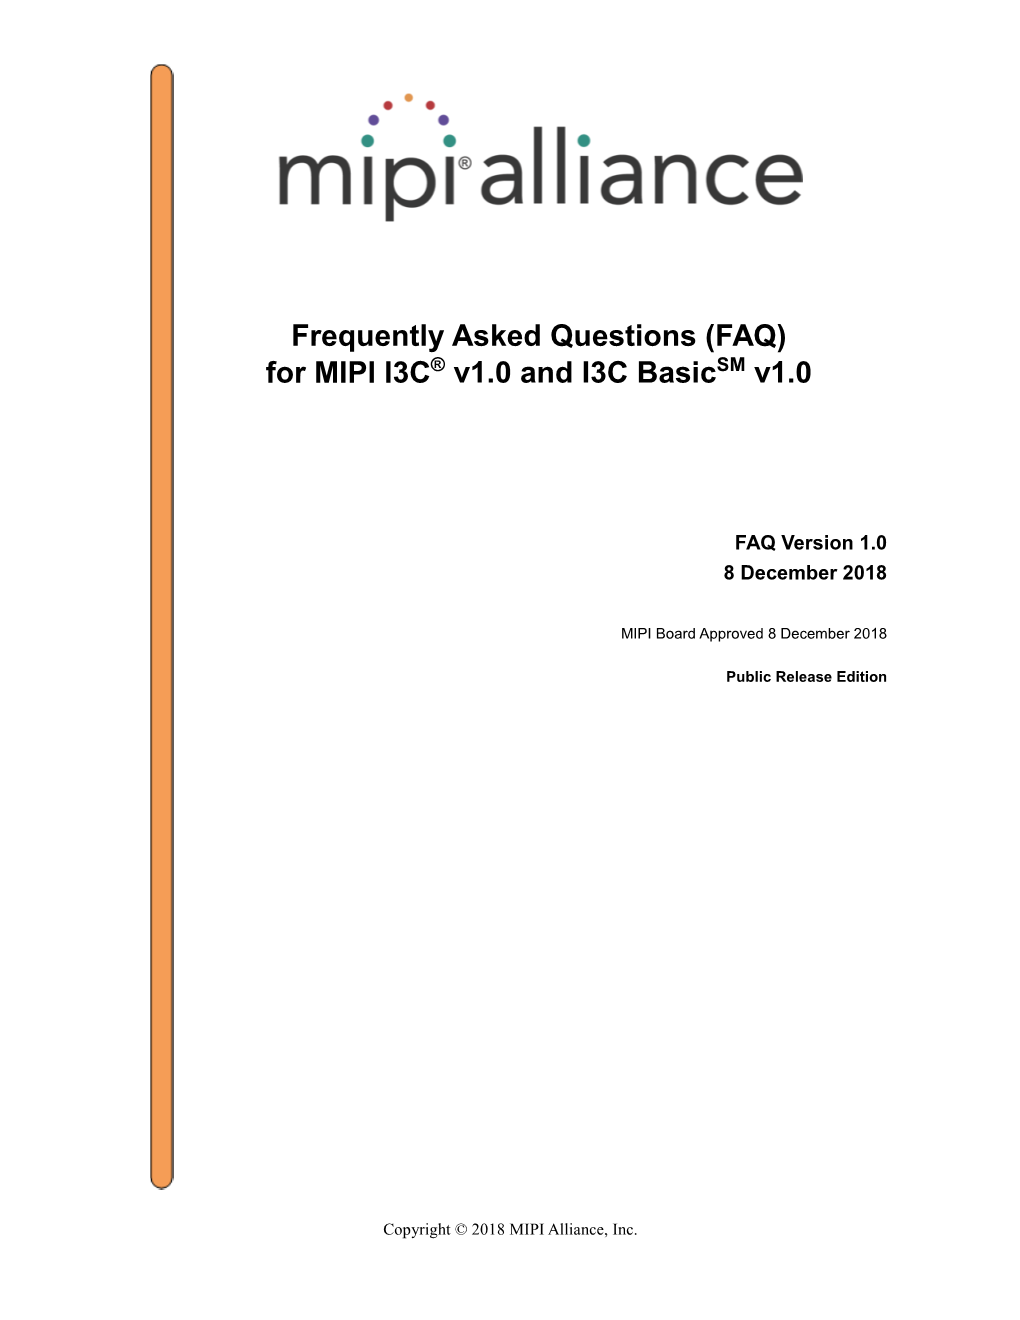 FAQ for MIPI I3C V1.0 and I3C Basic V1.0, FAQ V1.0